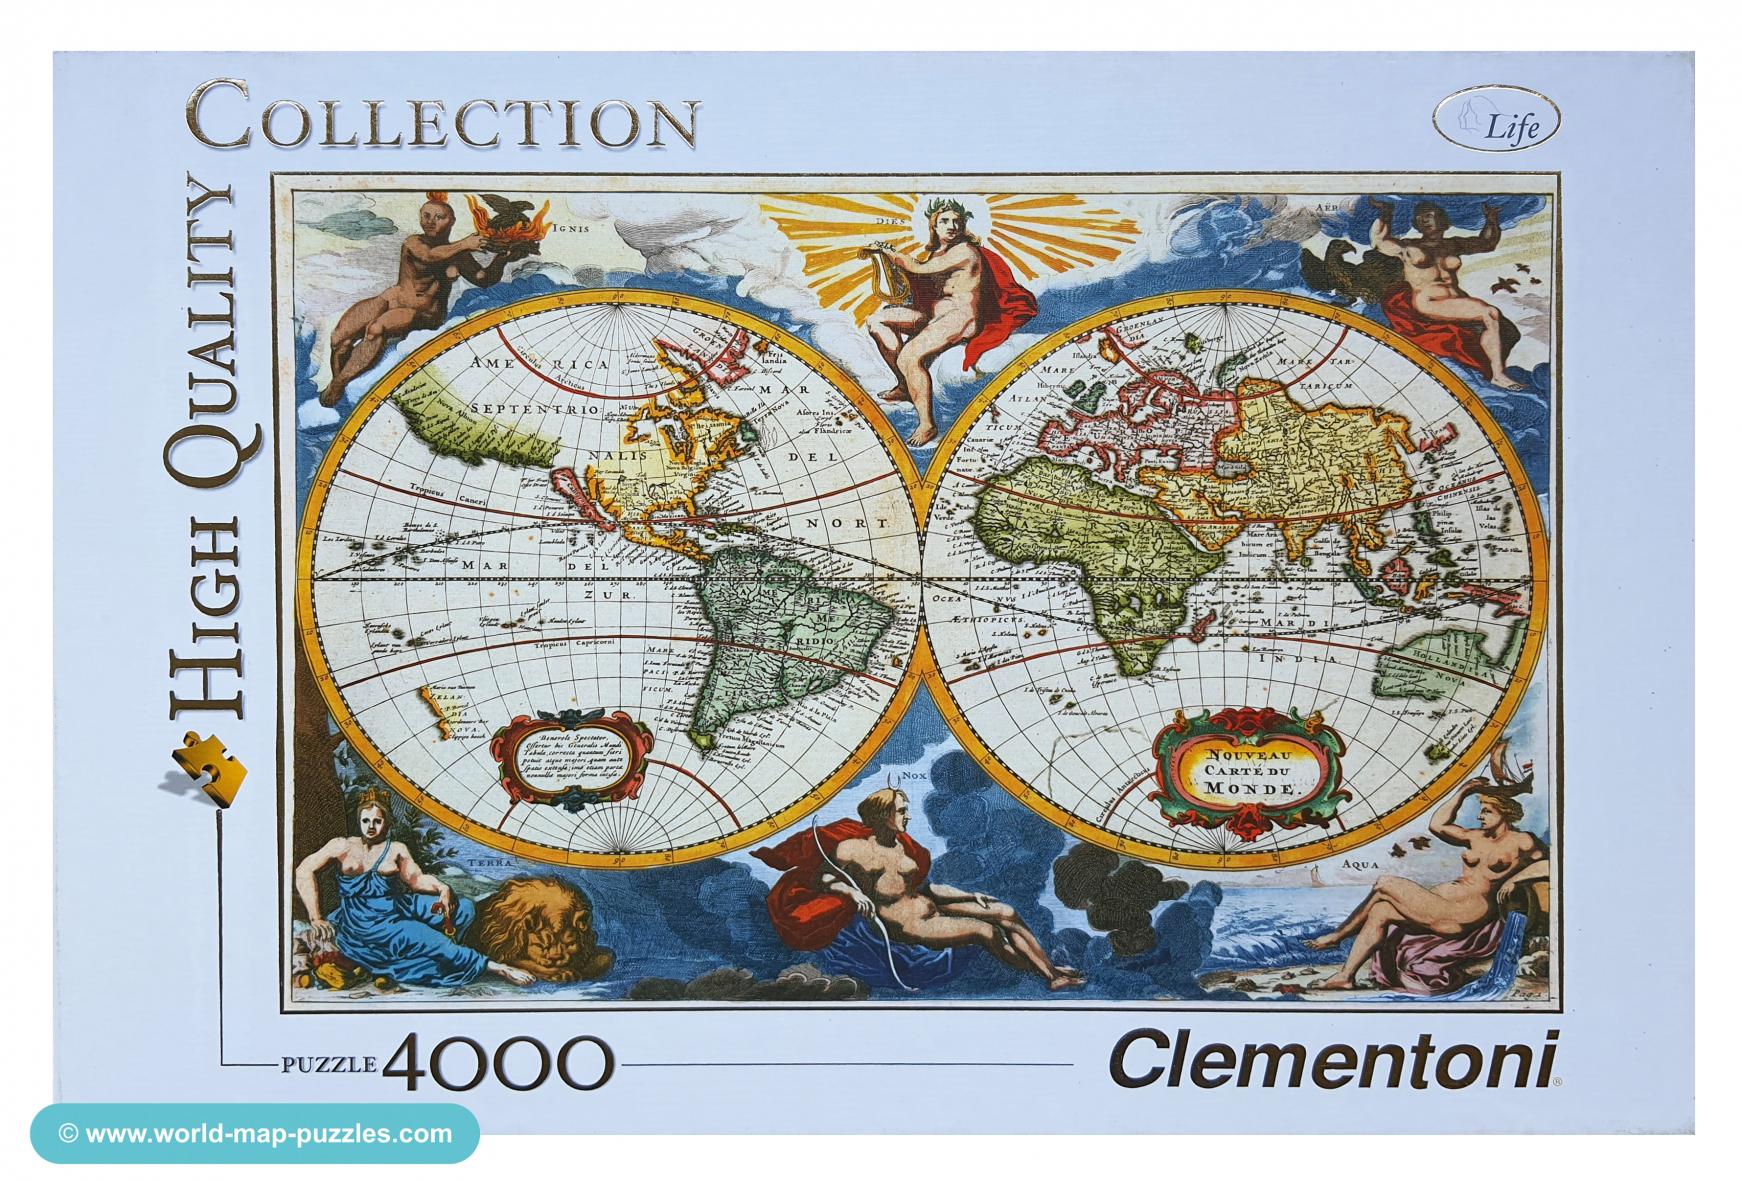 C mh-0018 Clementoni 4000